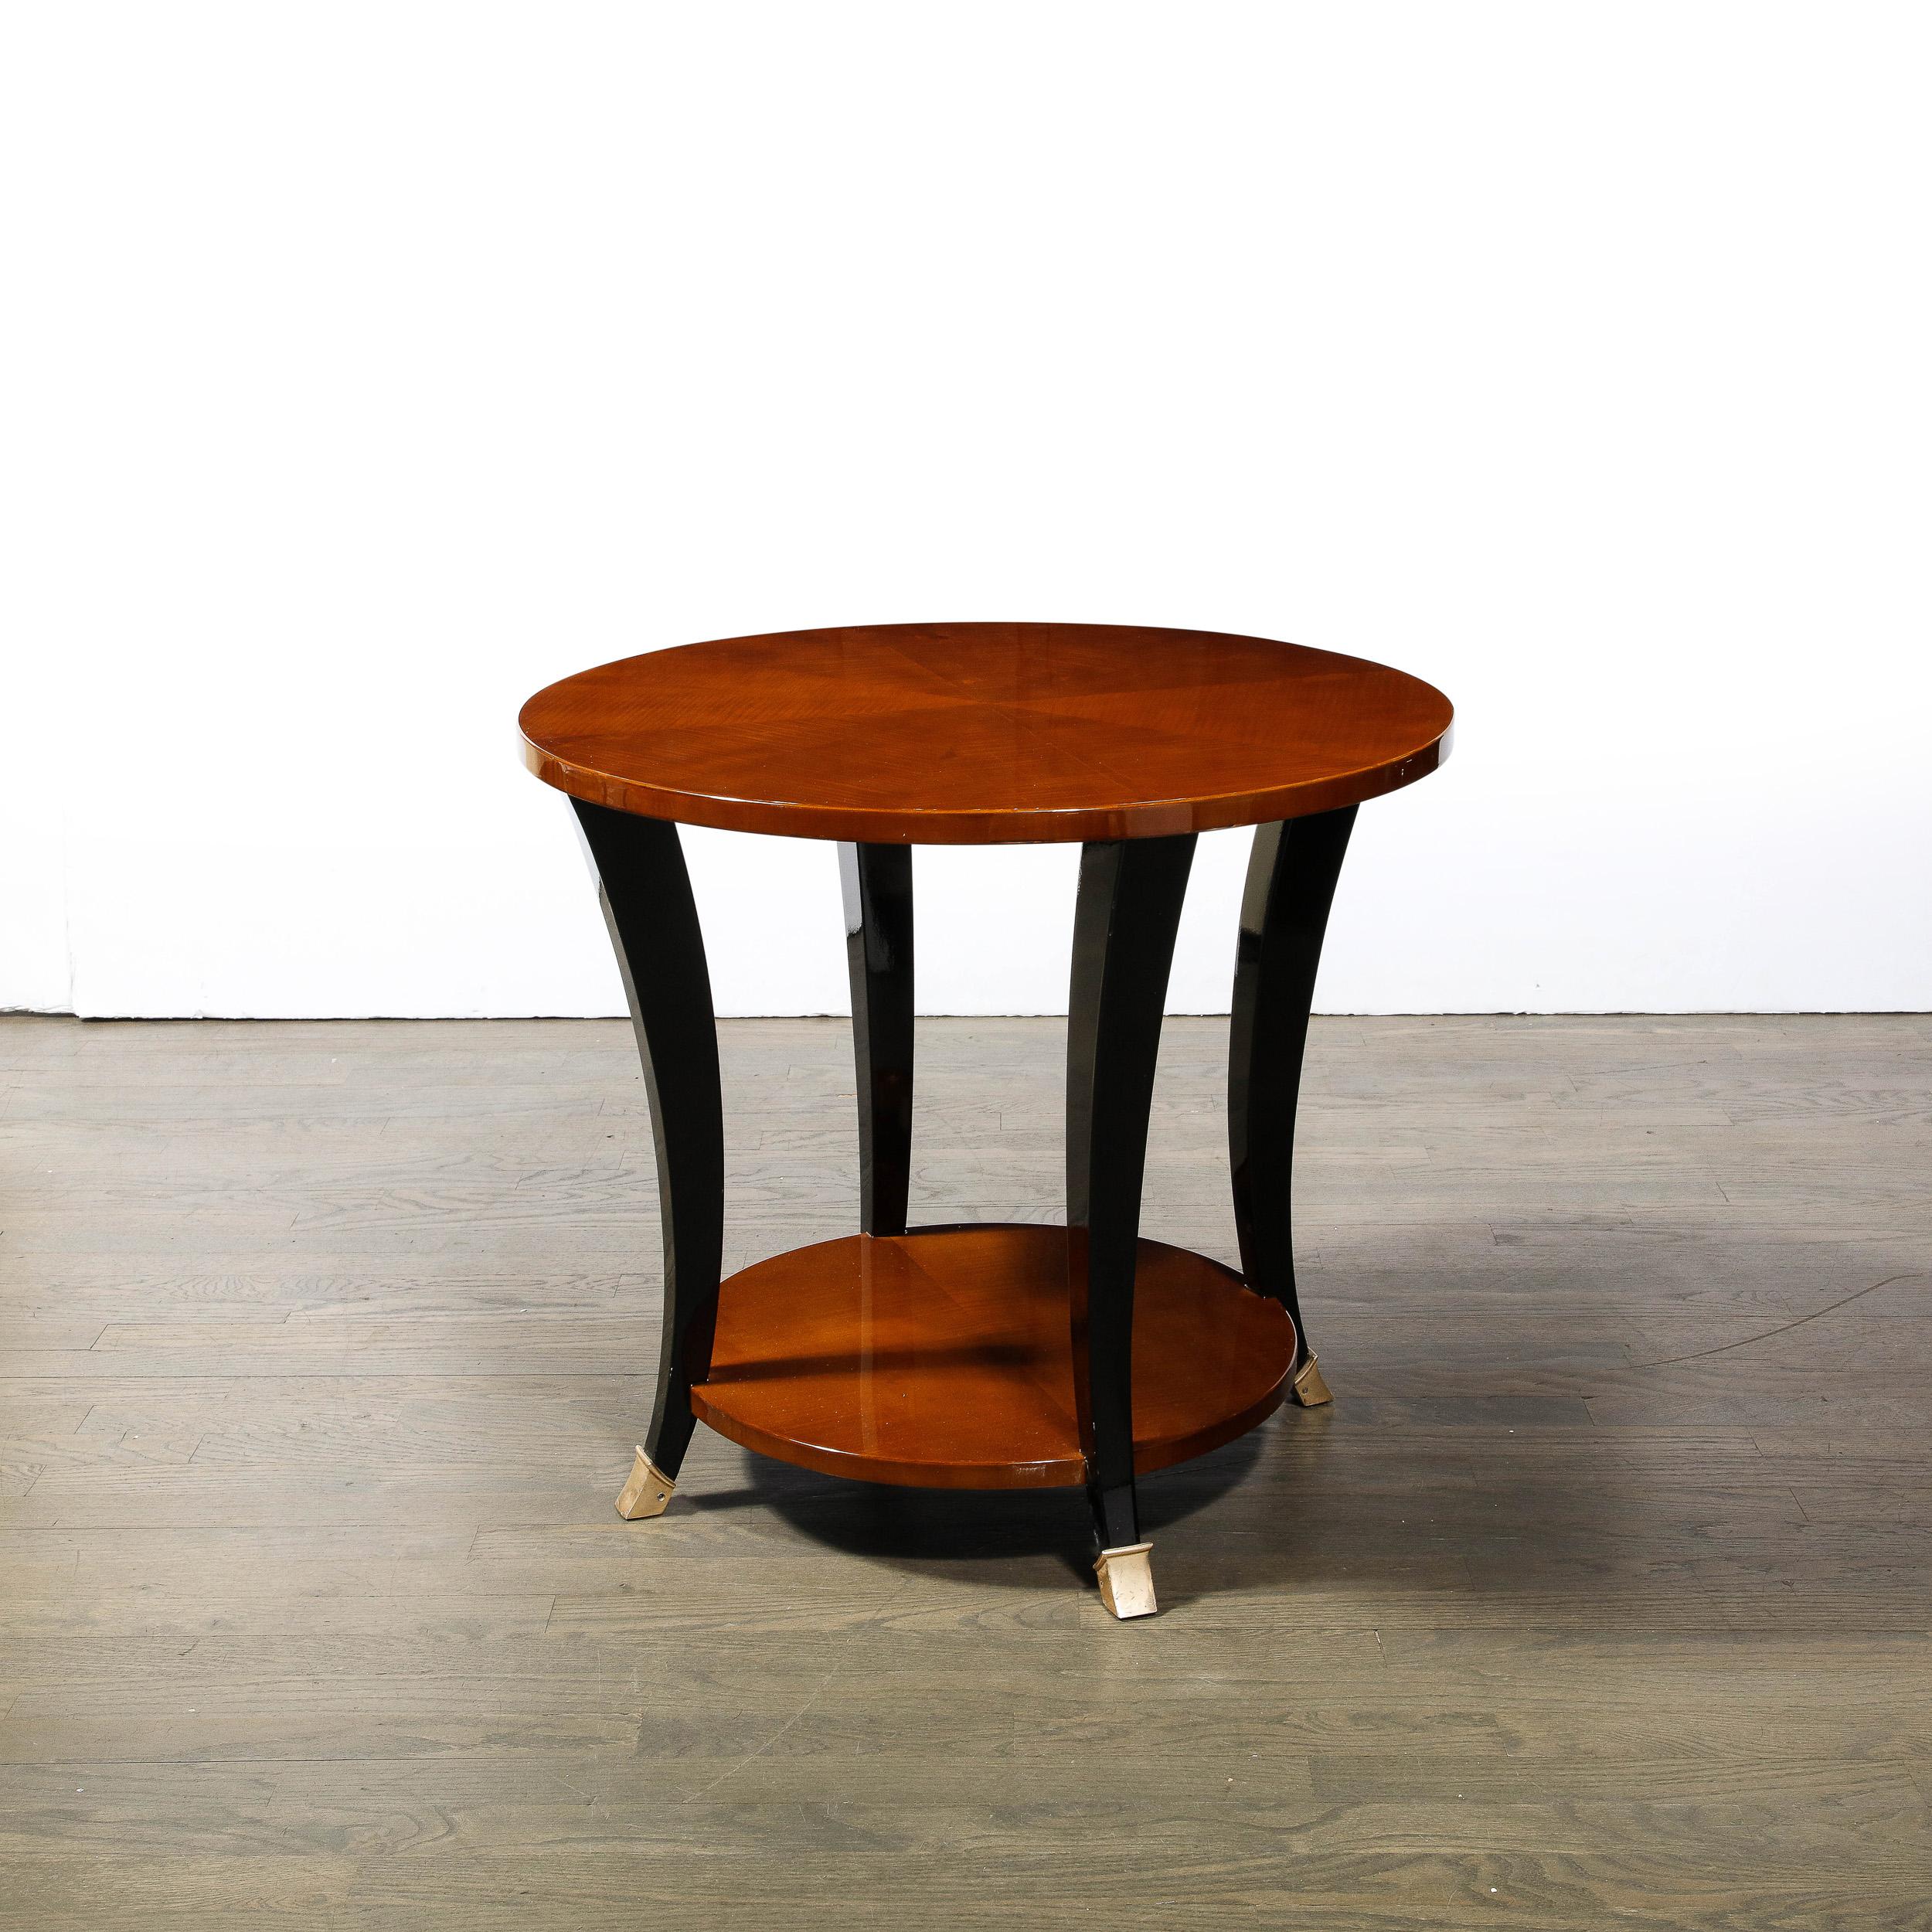 Dieser schöne zweistöckige Art Deco Machin Age Gueridon Tisch wurde in Frankreich um 1935 realisiert. Er bietet zwei runde Tischplatten aus Nussbaum in Buchform (die die reiche natürliche Schönheit der Holzmaserung zur Geltung bringen), die durch